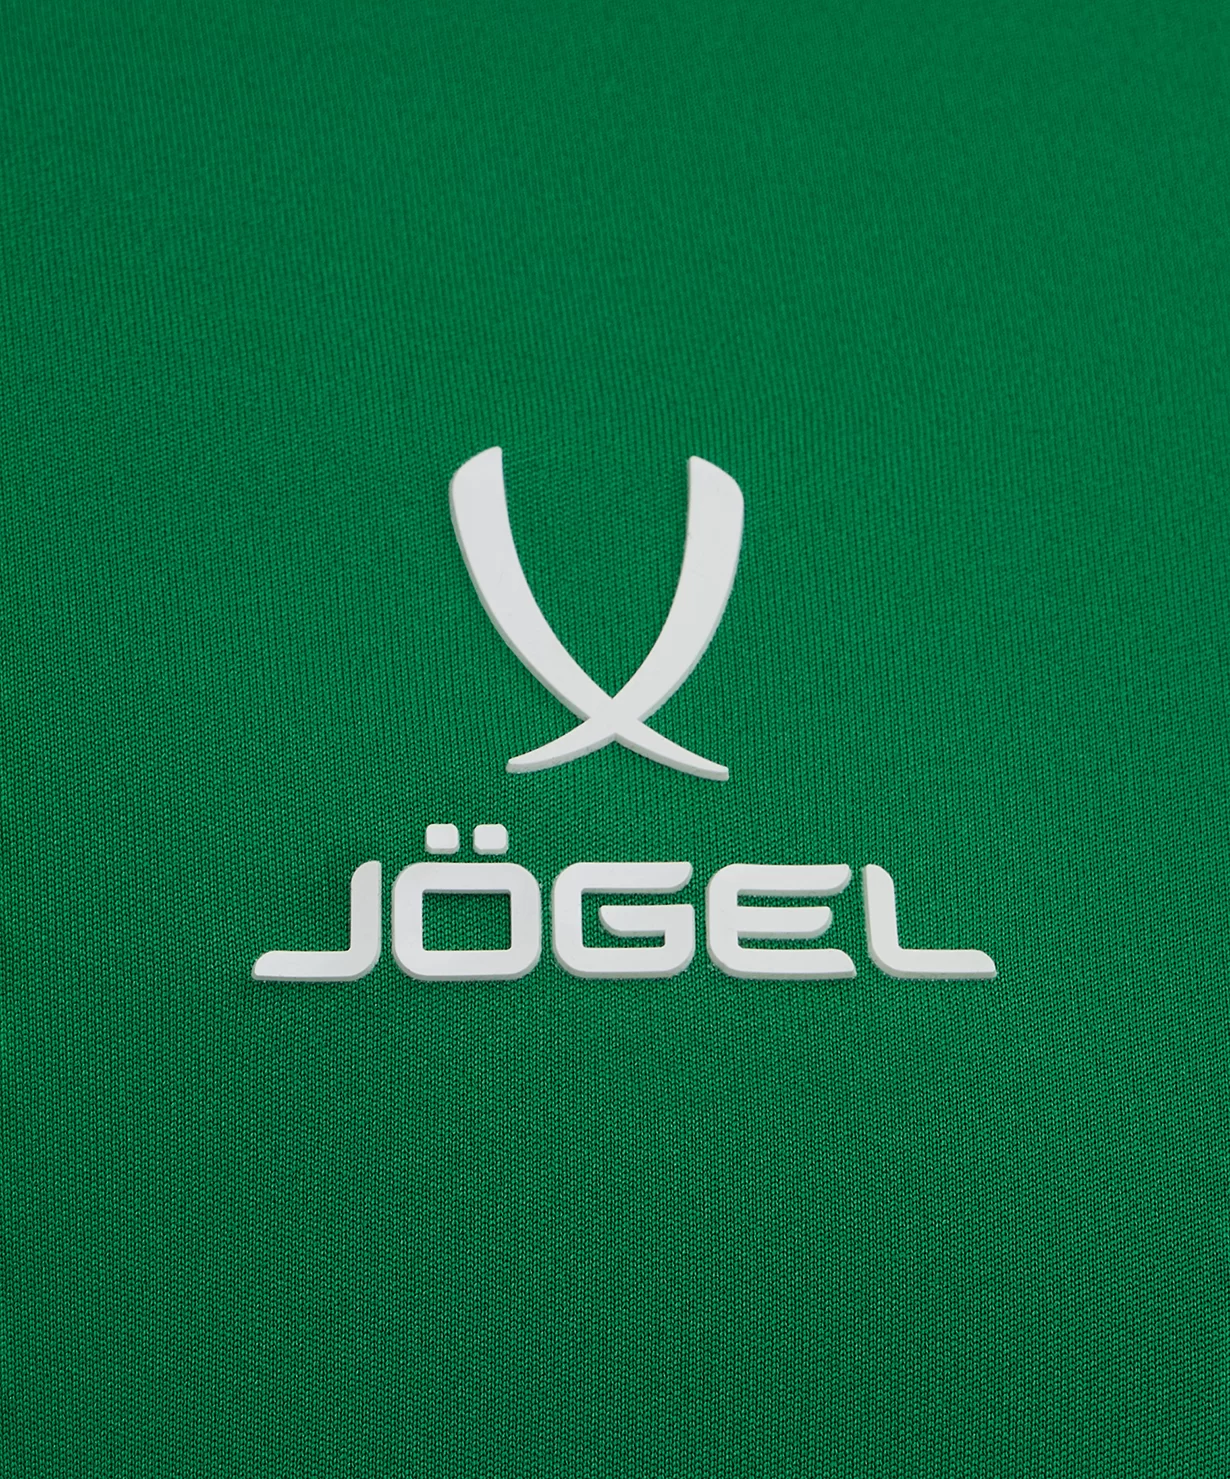 Фото Футболка игровая DIVISION PerFormDRY Union Jersey, зеленый Jögel со склада магазина Спортев